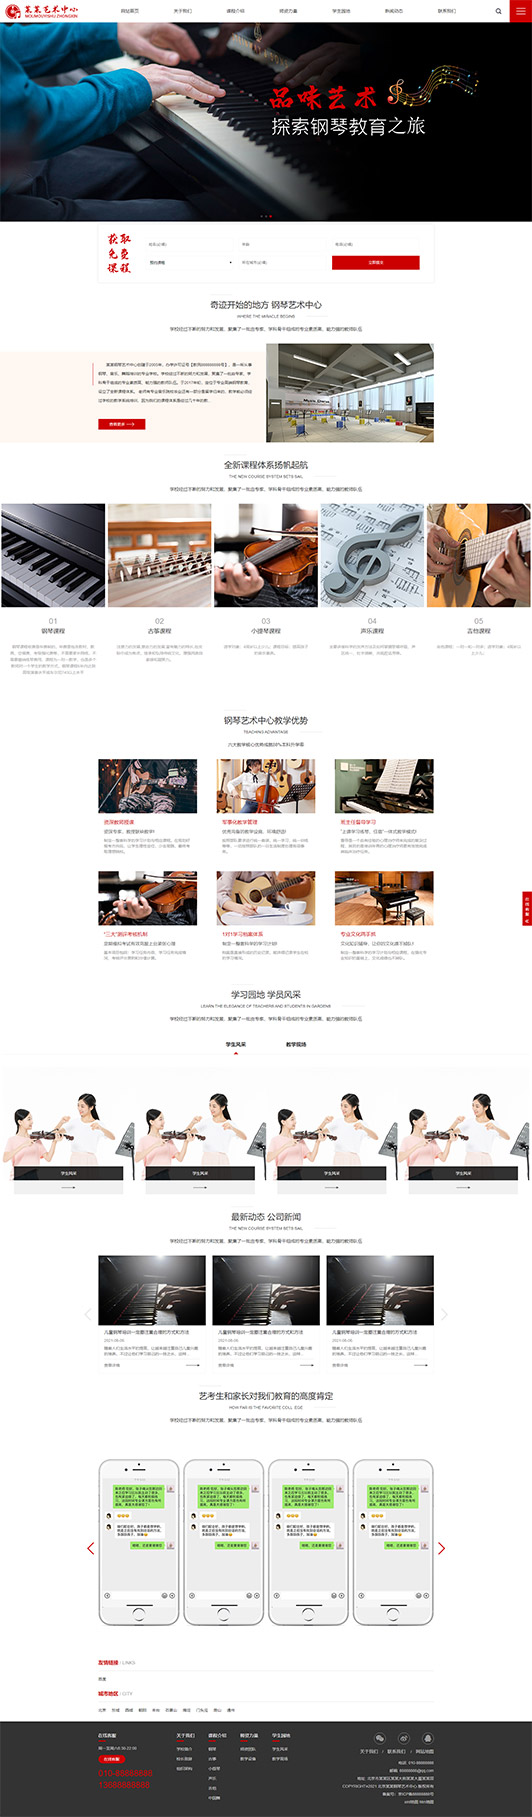 汕头钢琴艺术培训公司响应式企业网站